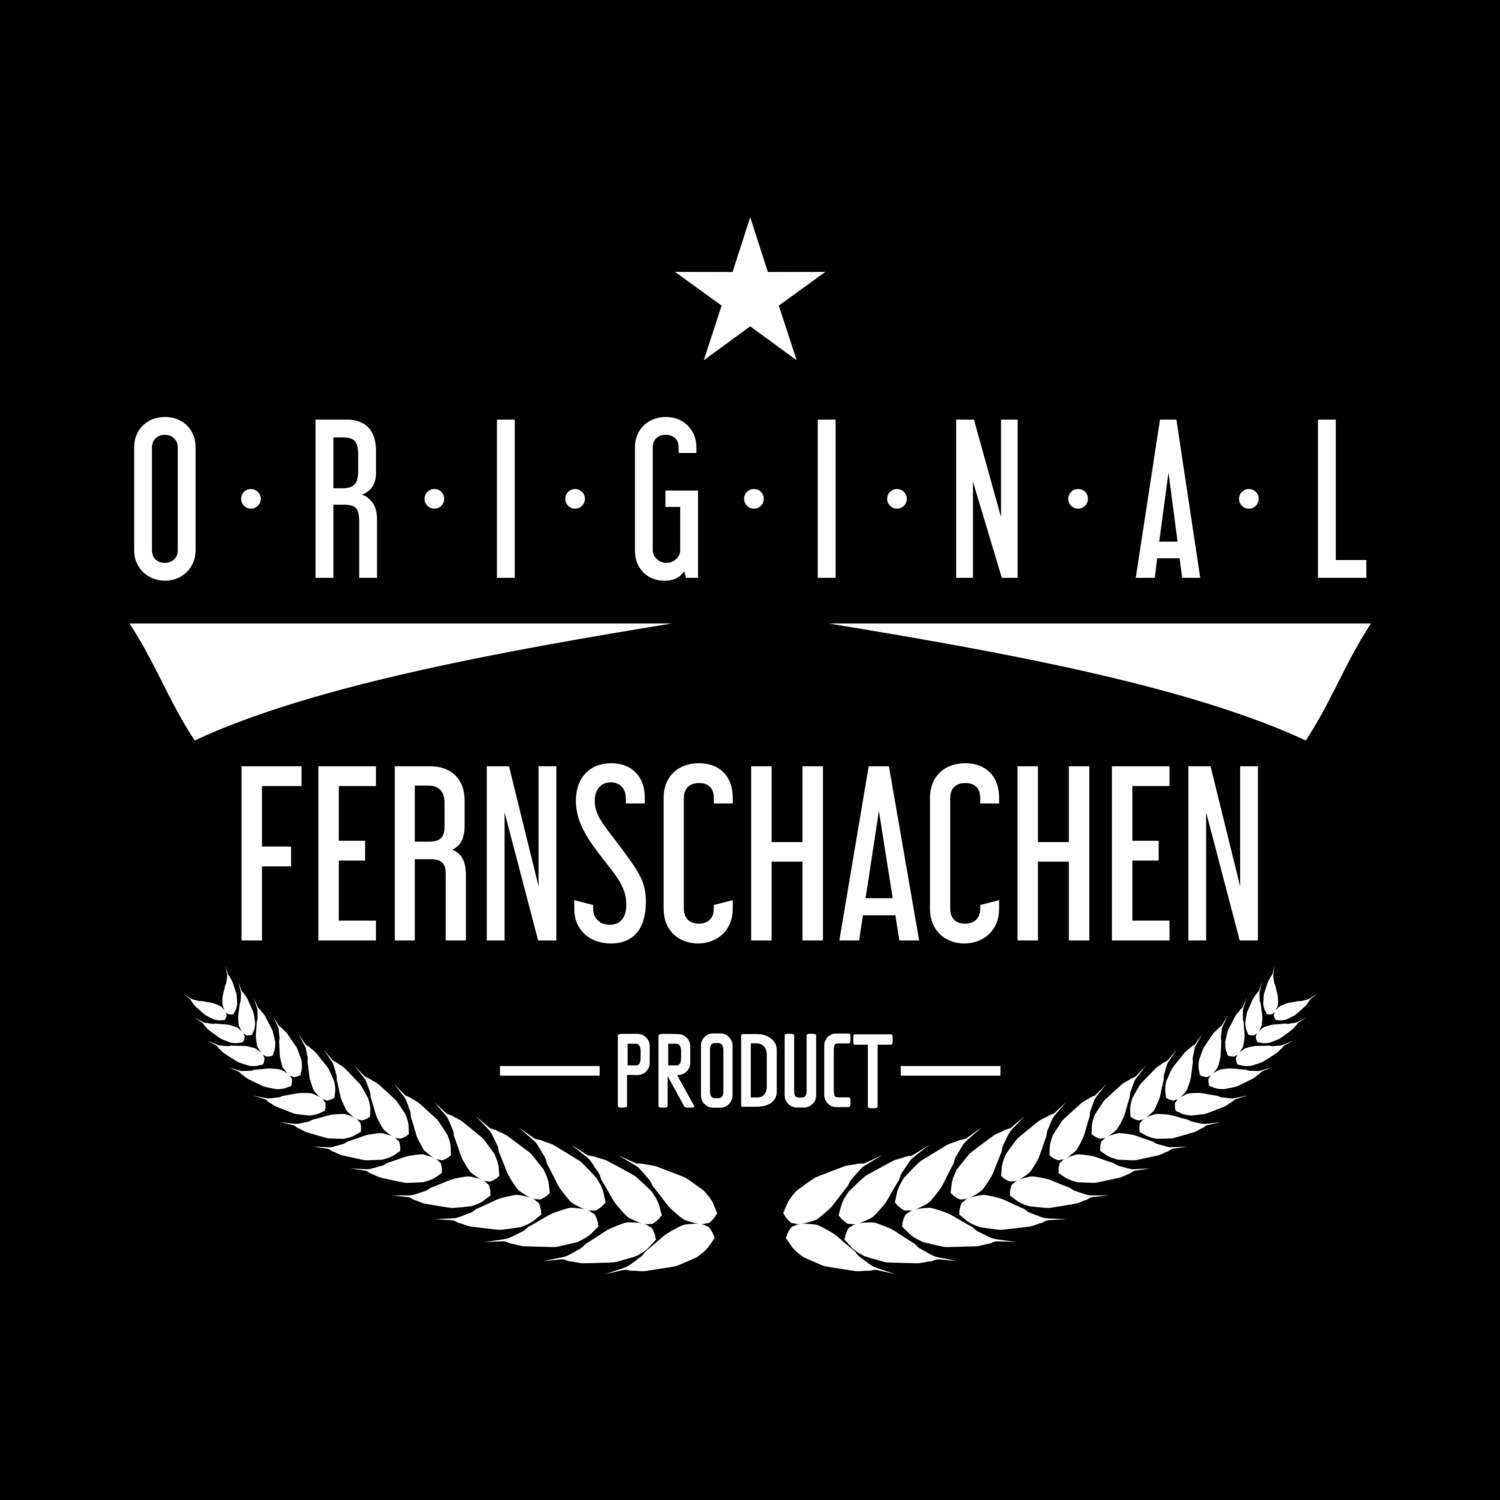 Fernschachen T-Shirt »Original Product«